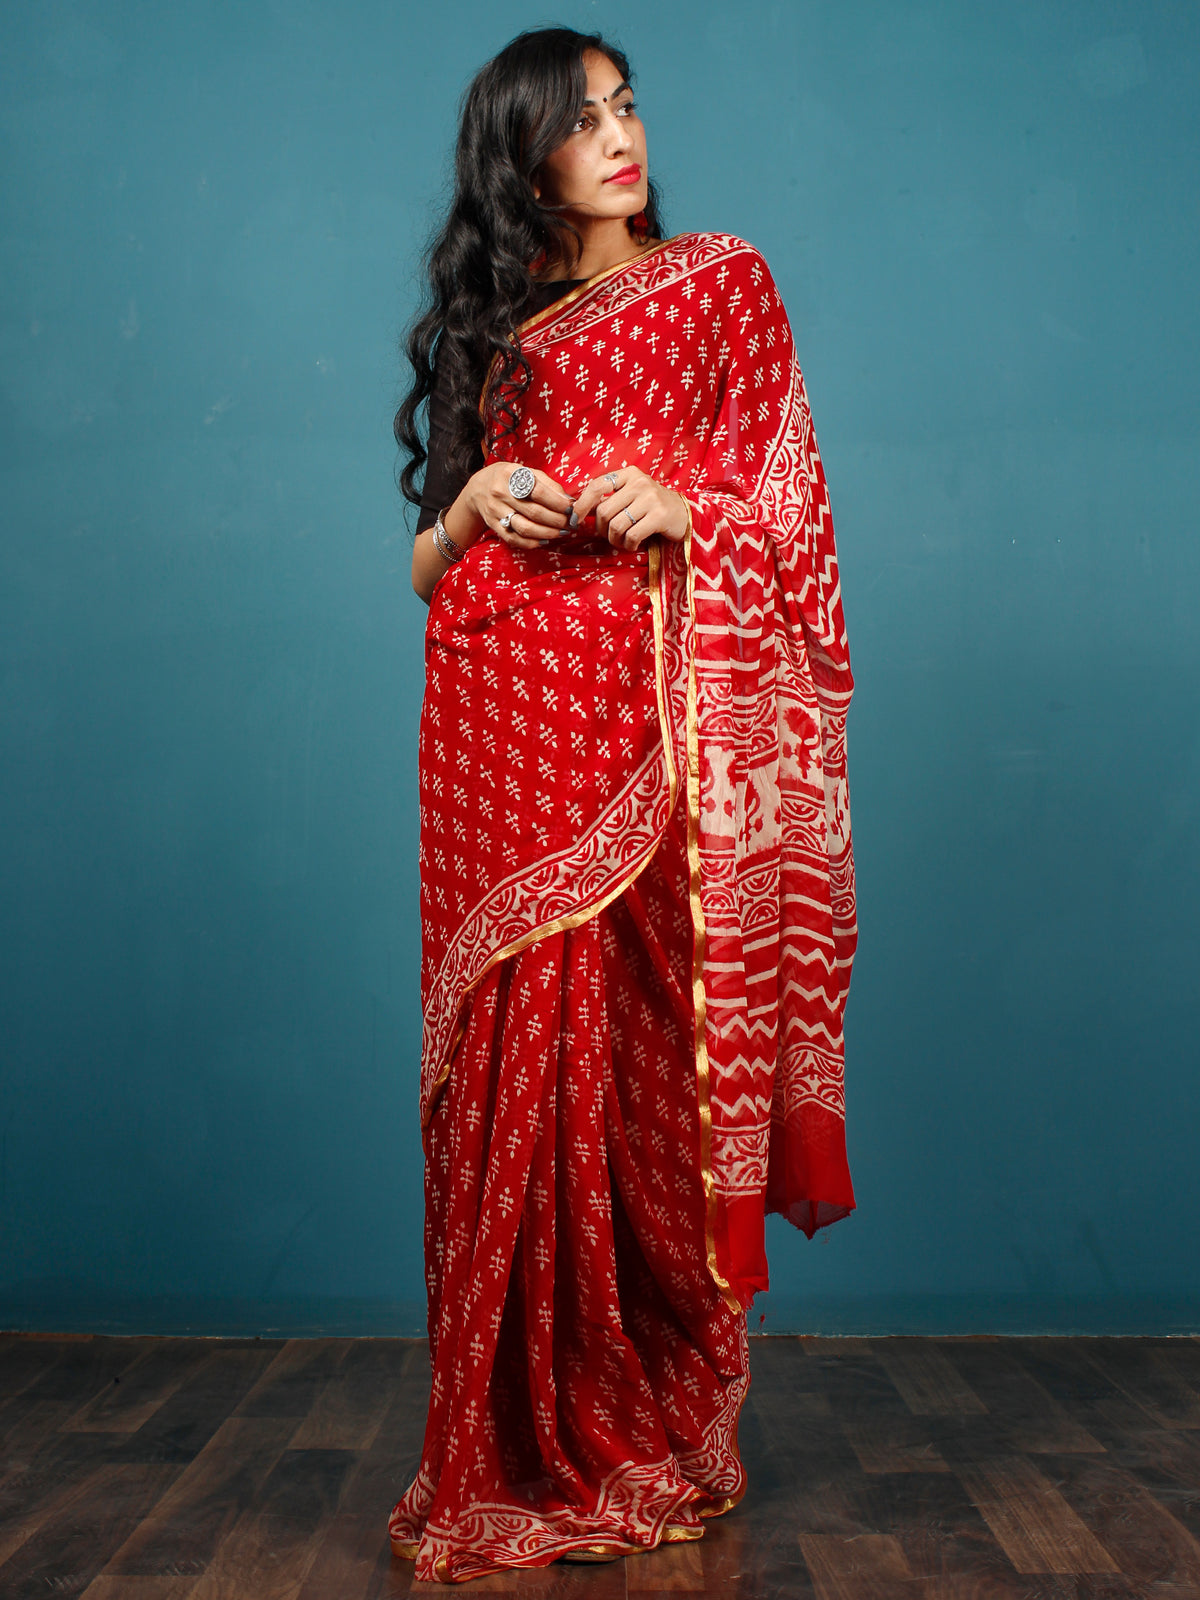 Red White Hand Block Printed Chiffon Saree with Zari Border - S031702796